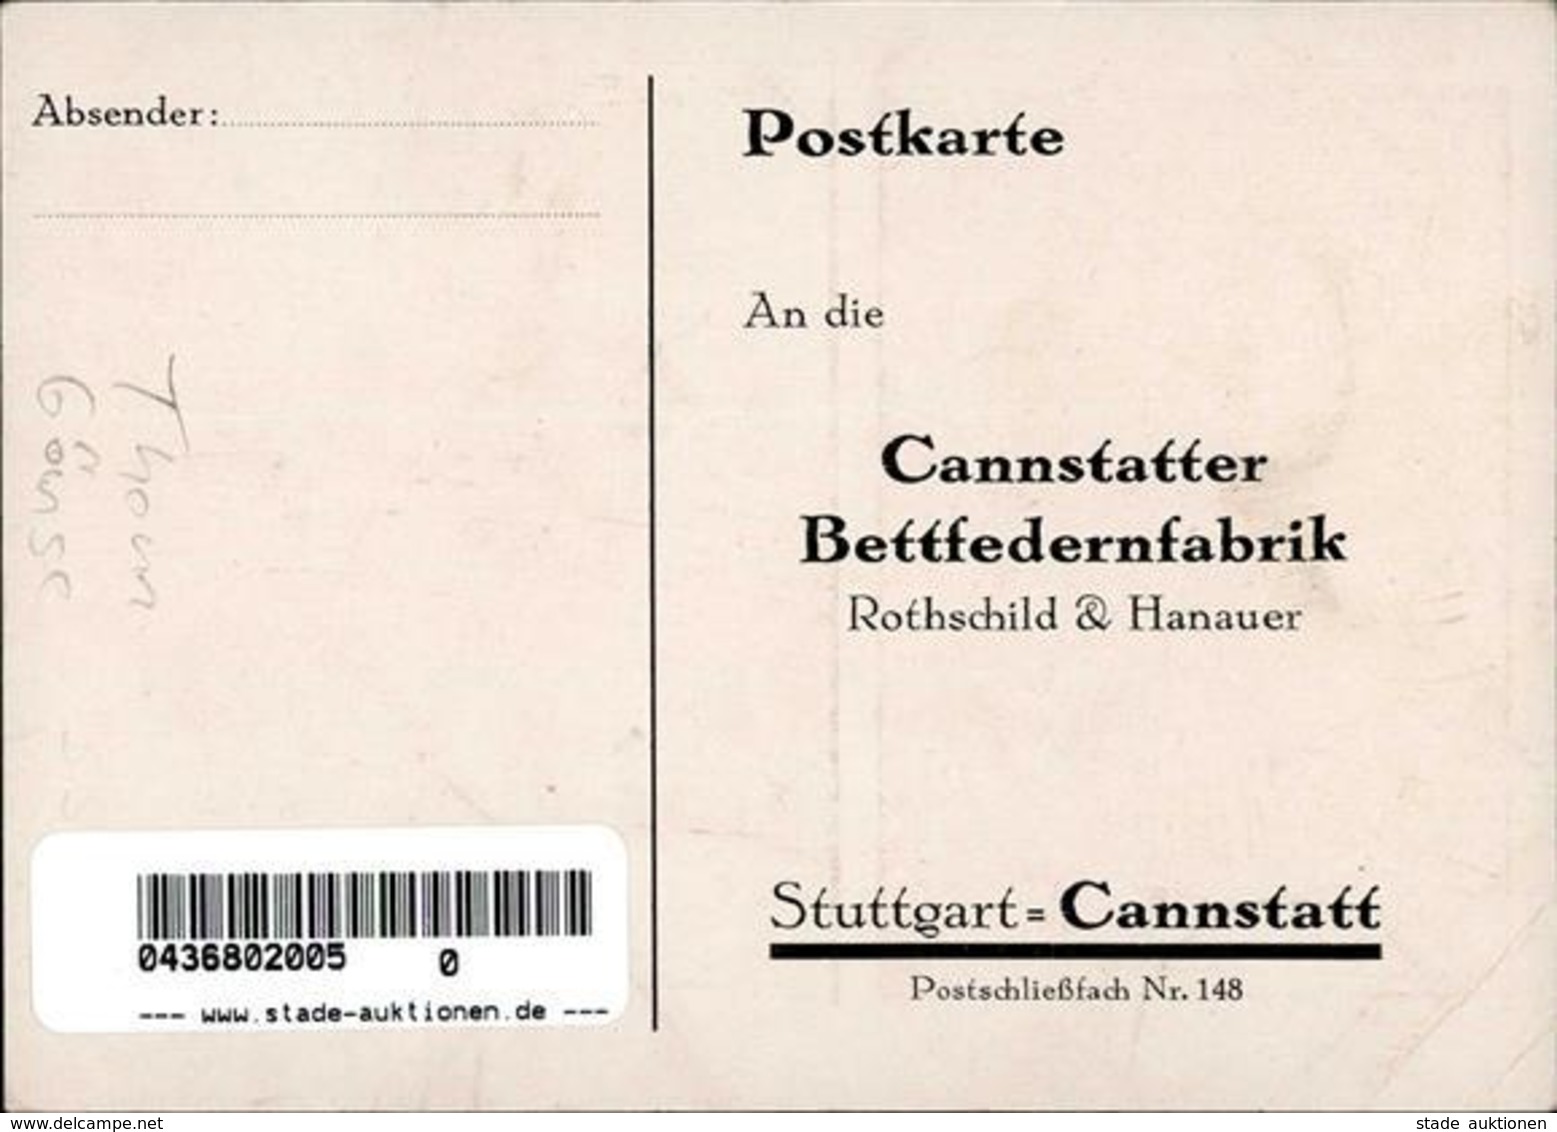 Werbung Bad Cannstatt (7000) Cannstatter Bettfedernfabrik I-II (Eckbug) Publicite - Werbepostkarten